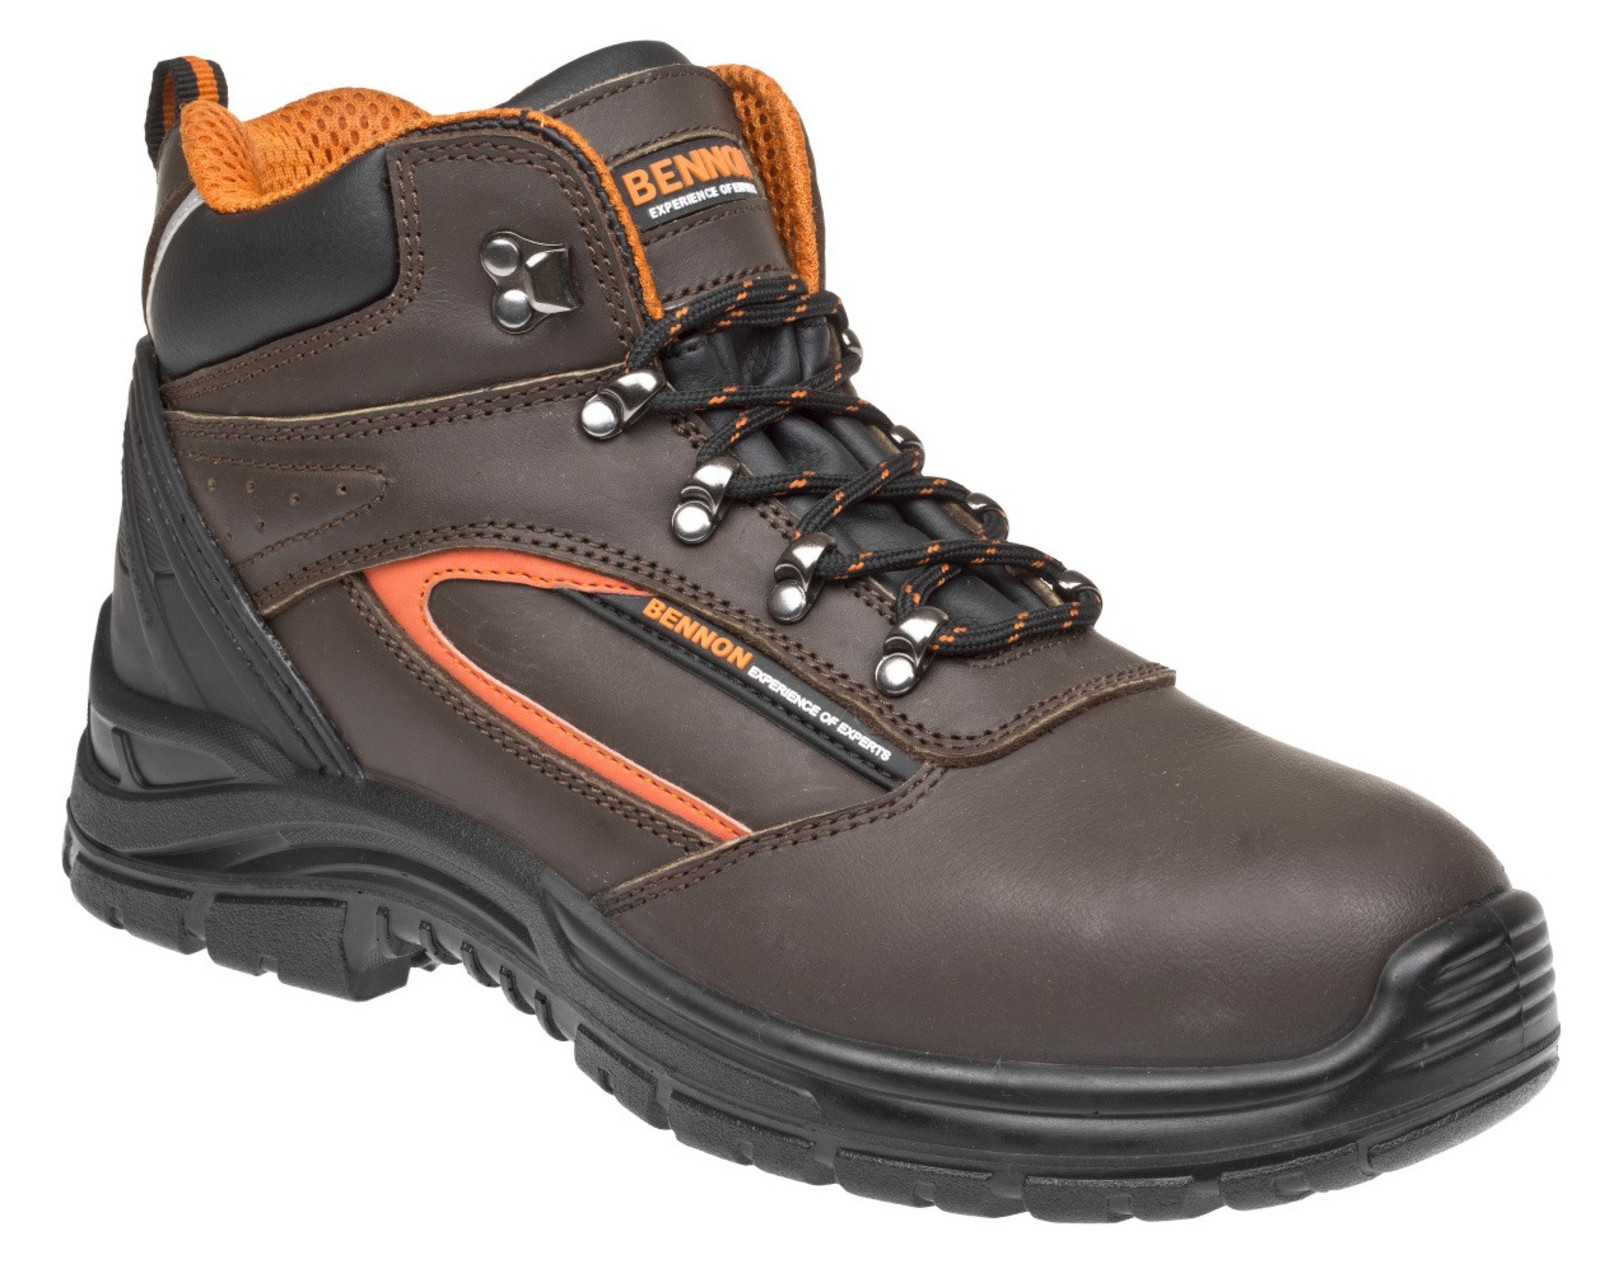 Bezpečnostná obuv Bennon Farmis S3 - veľkosť: 37, farba: hnedá